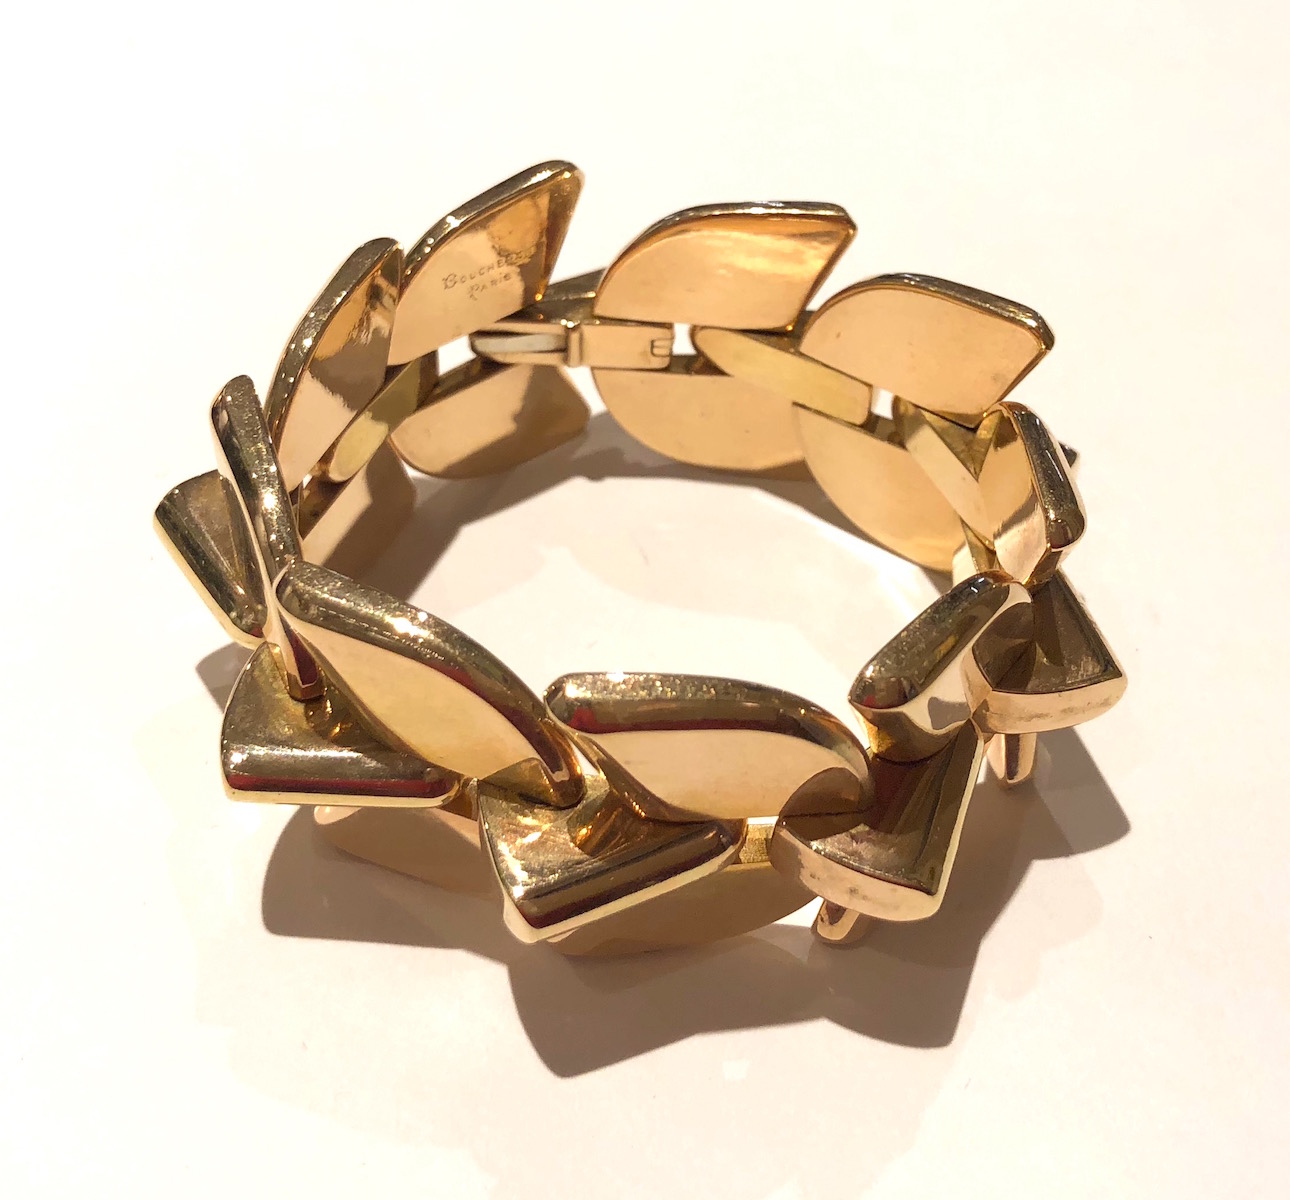 Boucheron, Paris “Palmette” bracelet, 18K pink gold, signed: Boucheron, Paris (script incised block signature), G and L in a triangle for Georges Lenfant (maker), c. 1945